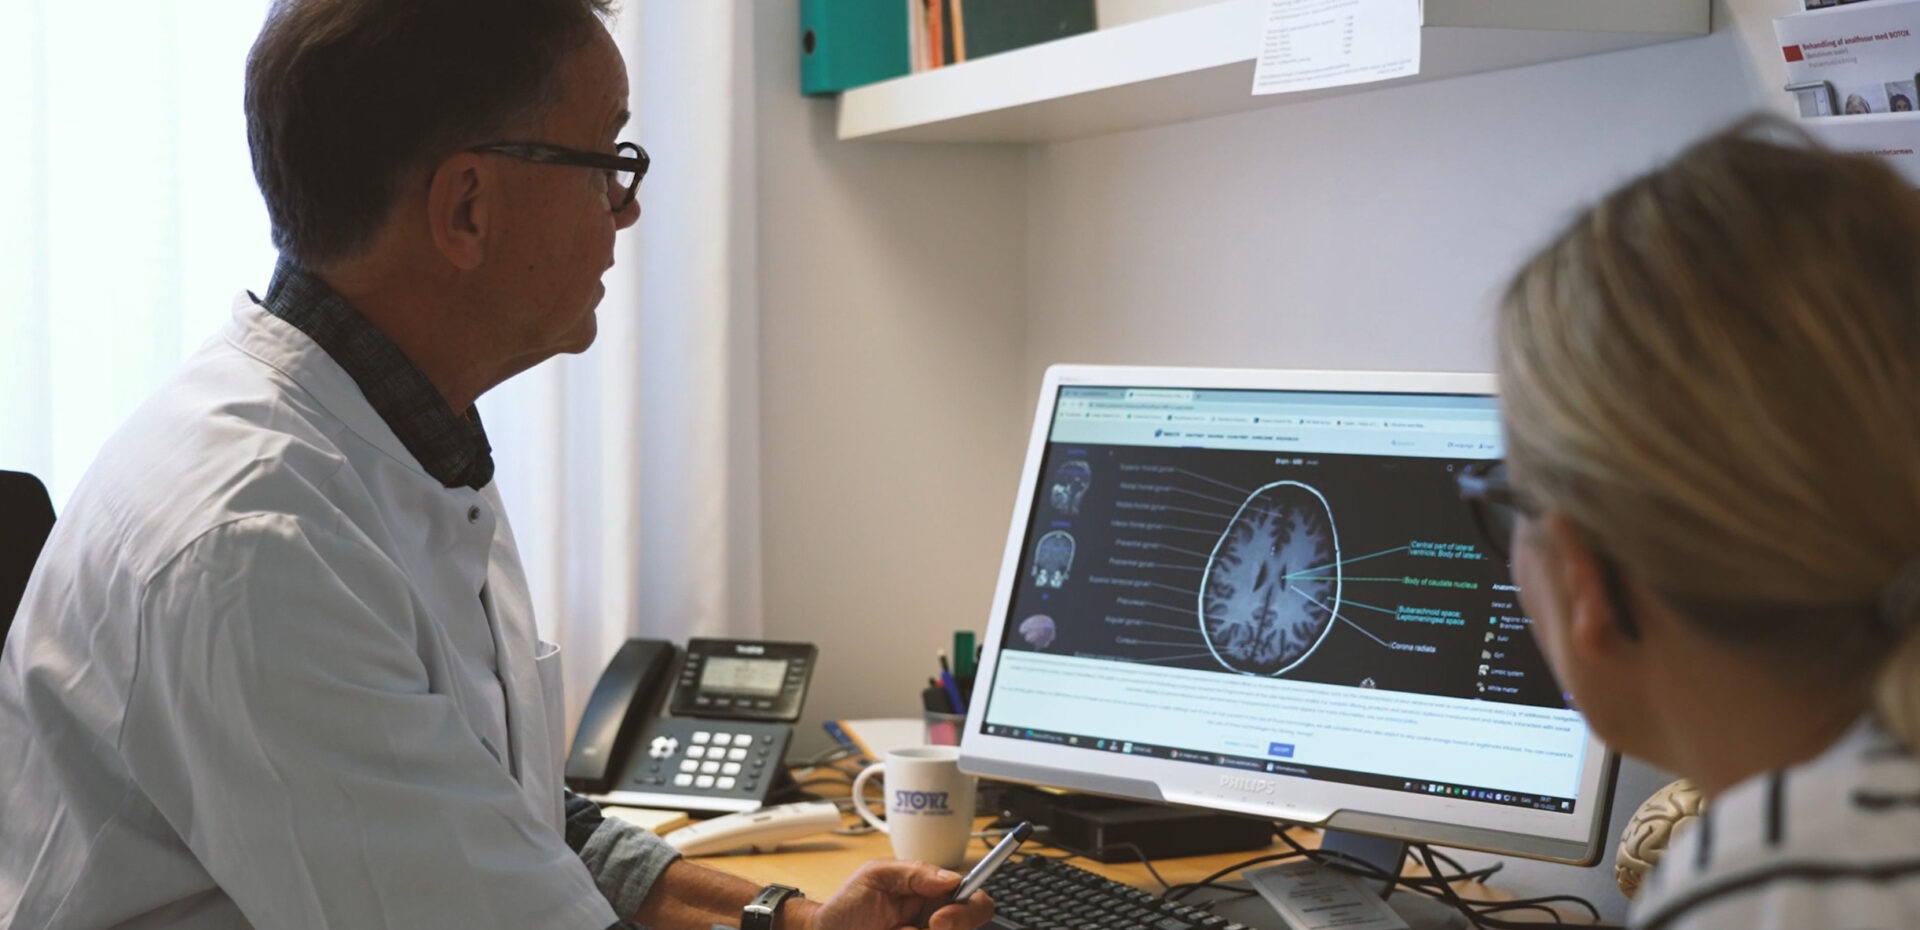 Neurolog ved skrivebord forklarer patient mr scanning af hjernen